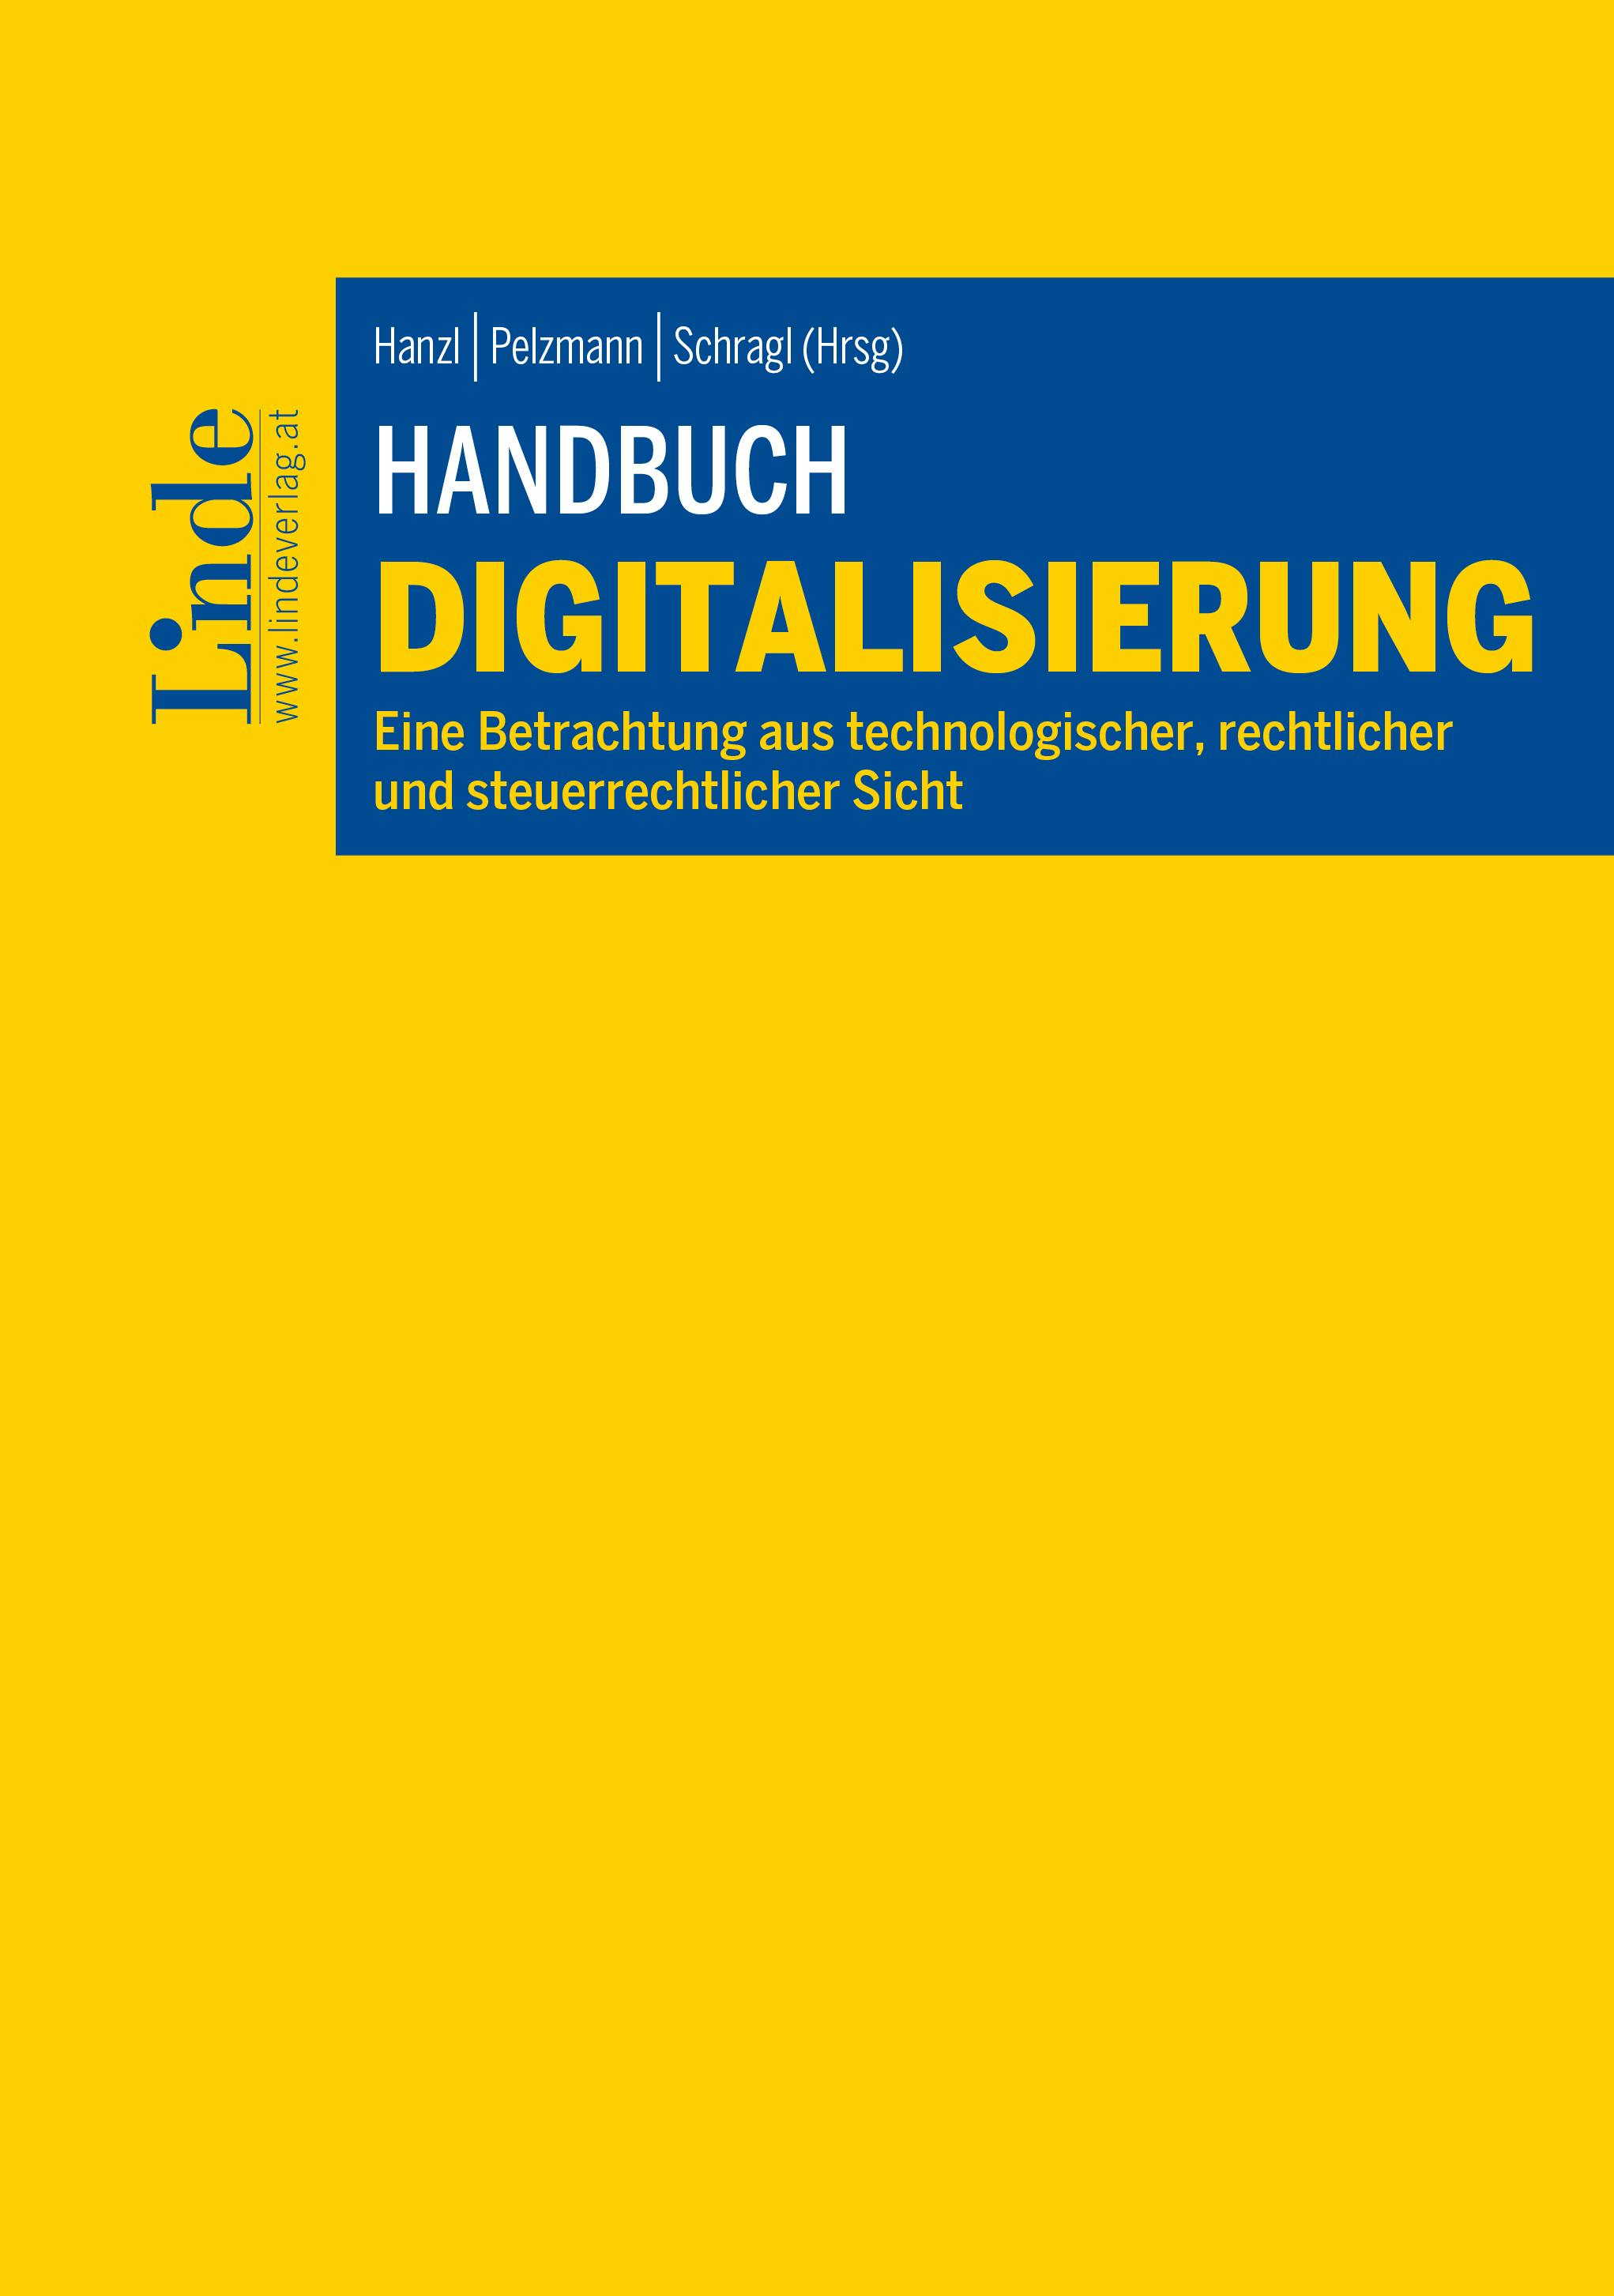 Hanzl | Pelzmann | Schragl (Hrsg.)
Handbuch Digitalisierung
Eine Betrachtung aus technologischer, rechtlicher und steuerrechtlicher Sicht